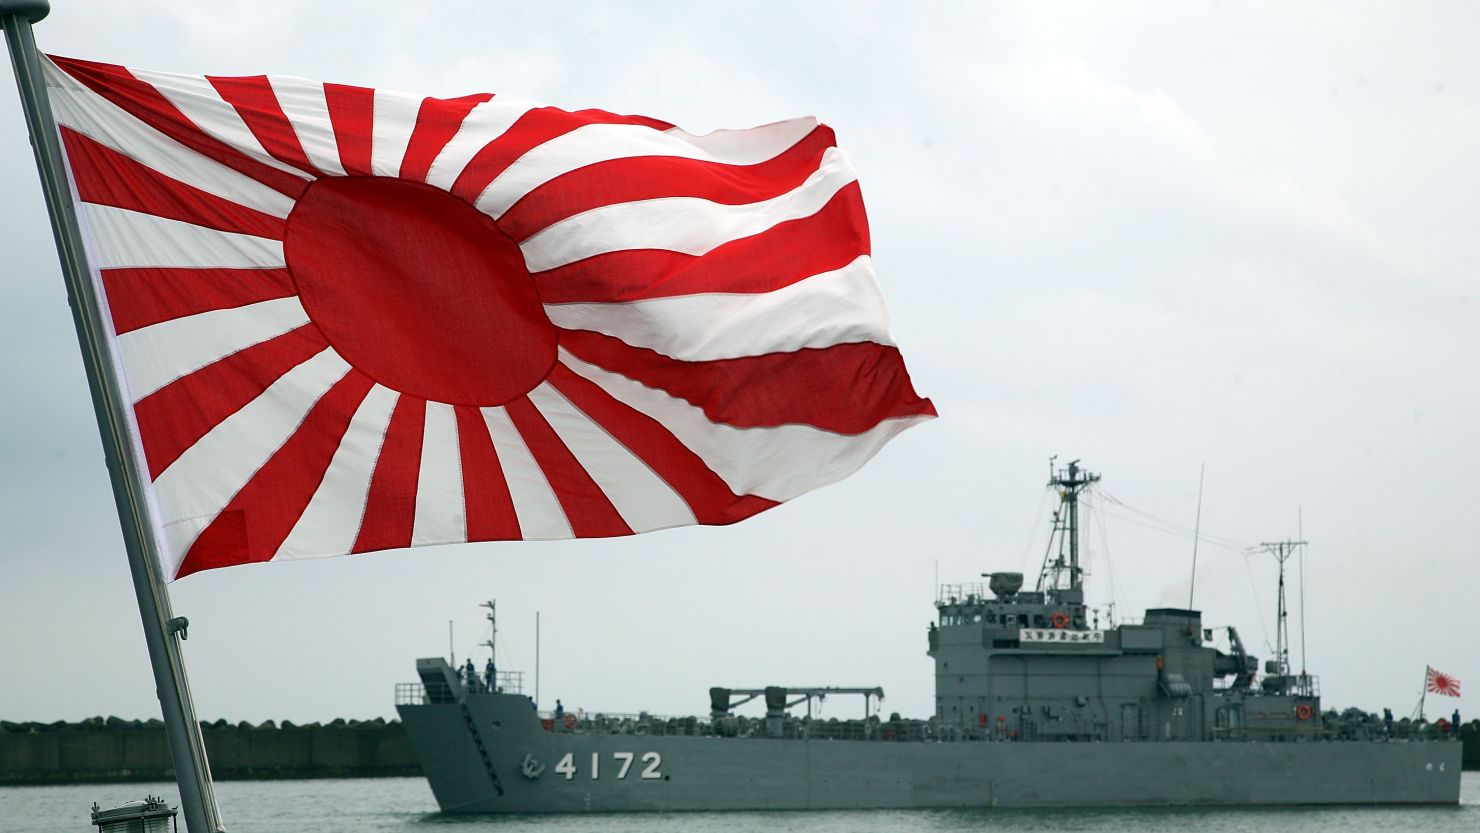 A Japanese Maritime Self-Defense Force vessels arrive at Kashiwazaki Port on July 17, 2007 in Kashiwazaki, Japan.